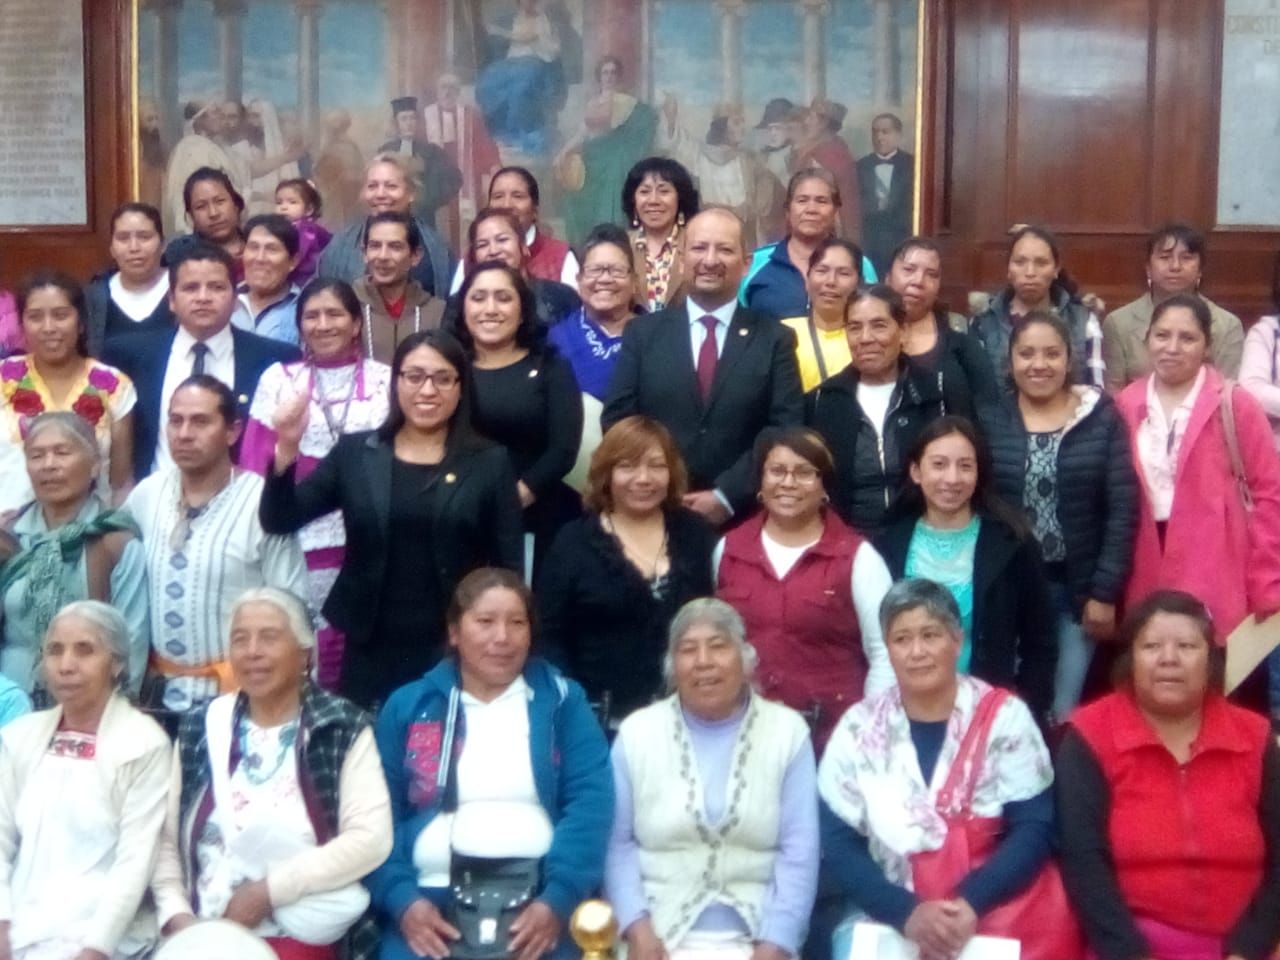 Se garantizarán los derechos para superar la feminización de la pobreza en mujeres indígenas: Max Correa